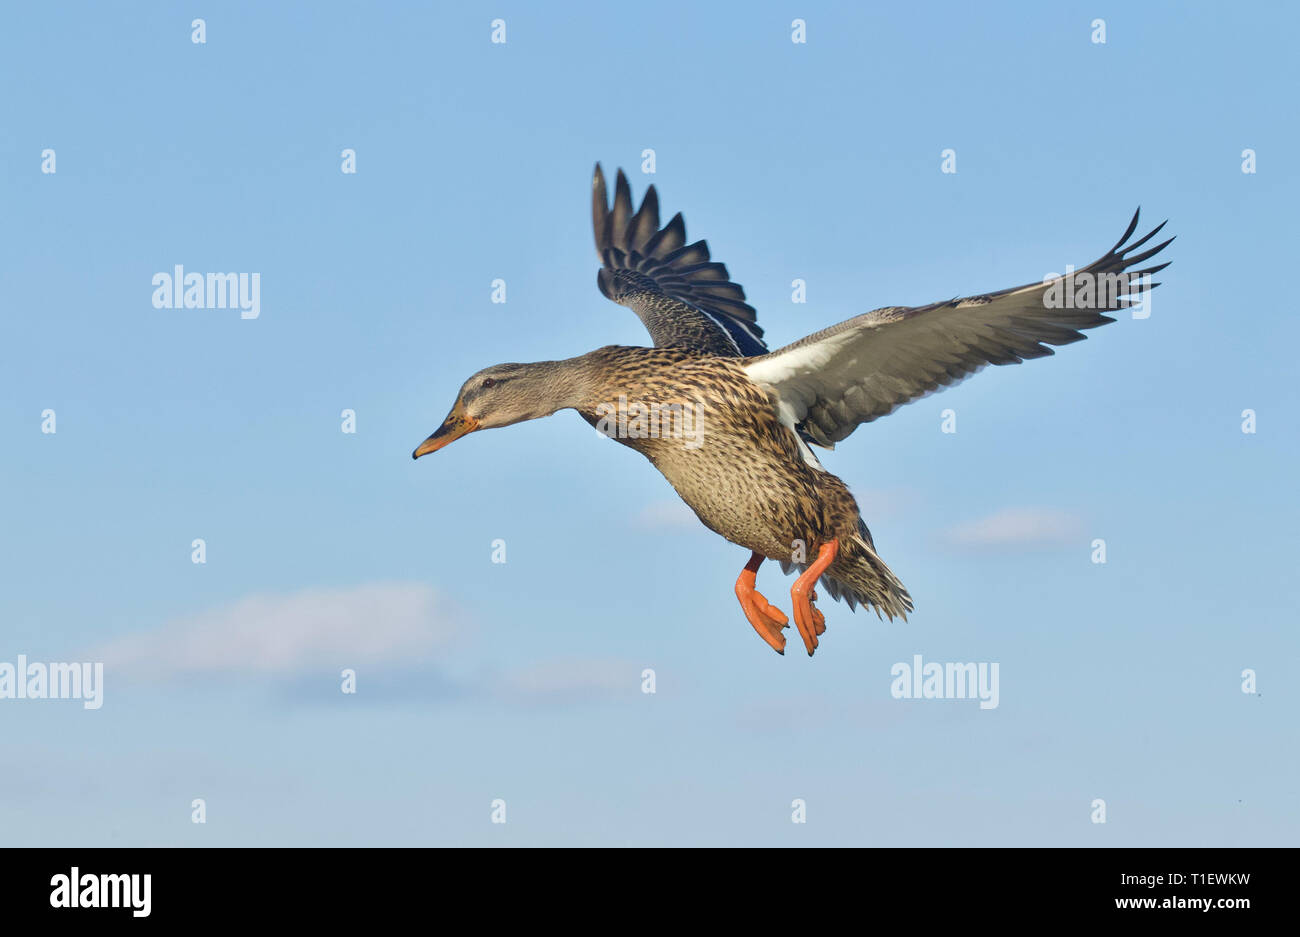 Mallard Duck in volo contro un cielo blu con nuvole - naturale 'come shot' sullo sfondo - non photoshopped Foto Stock